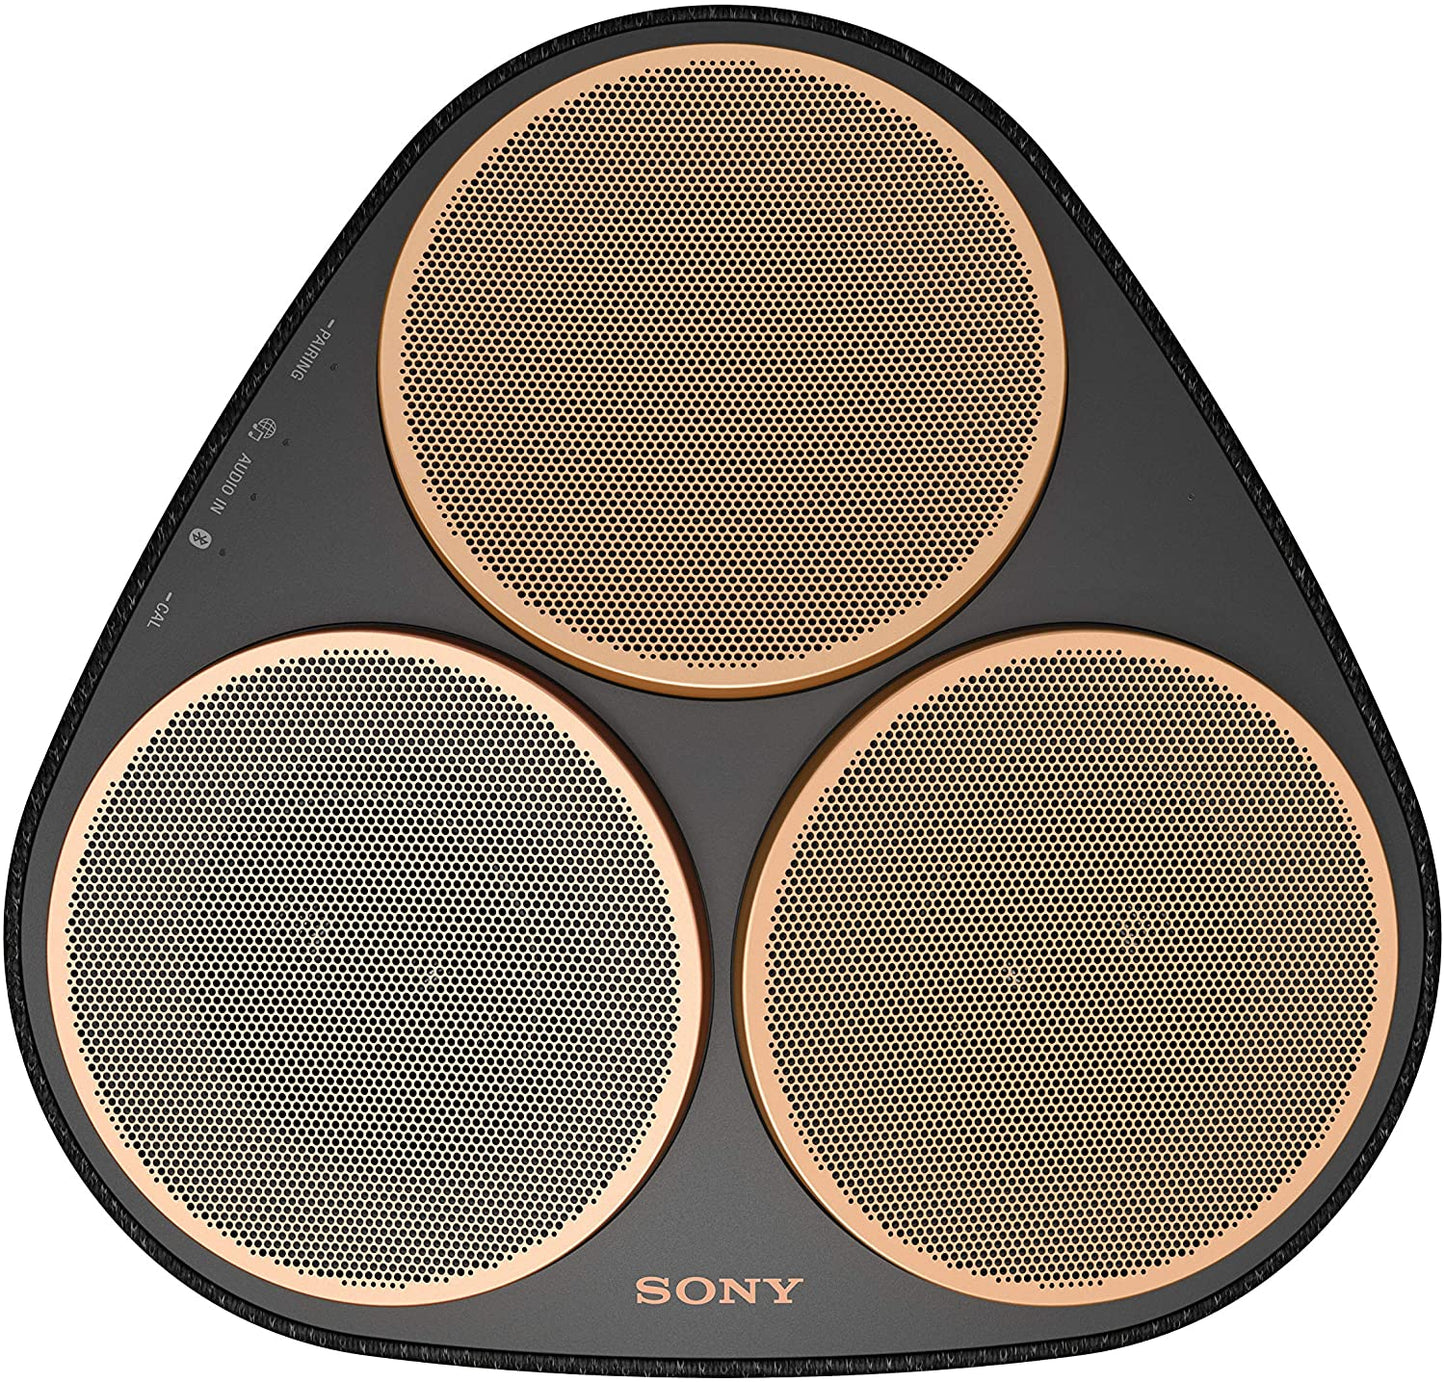 Sony SRS-RA5000 360 Reality Audio Premium Wi-Fi / Bluetooth Wireless Speaker